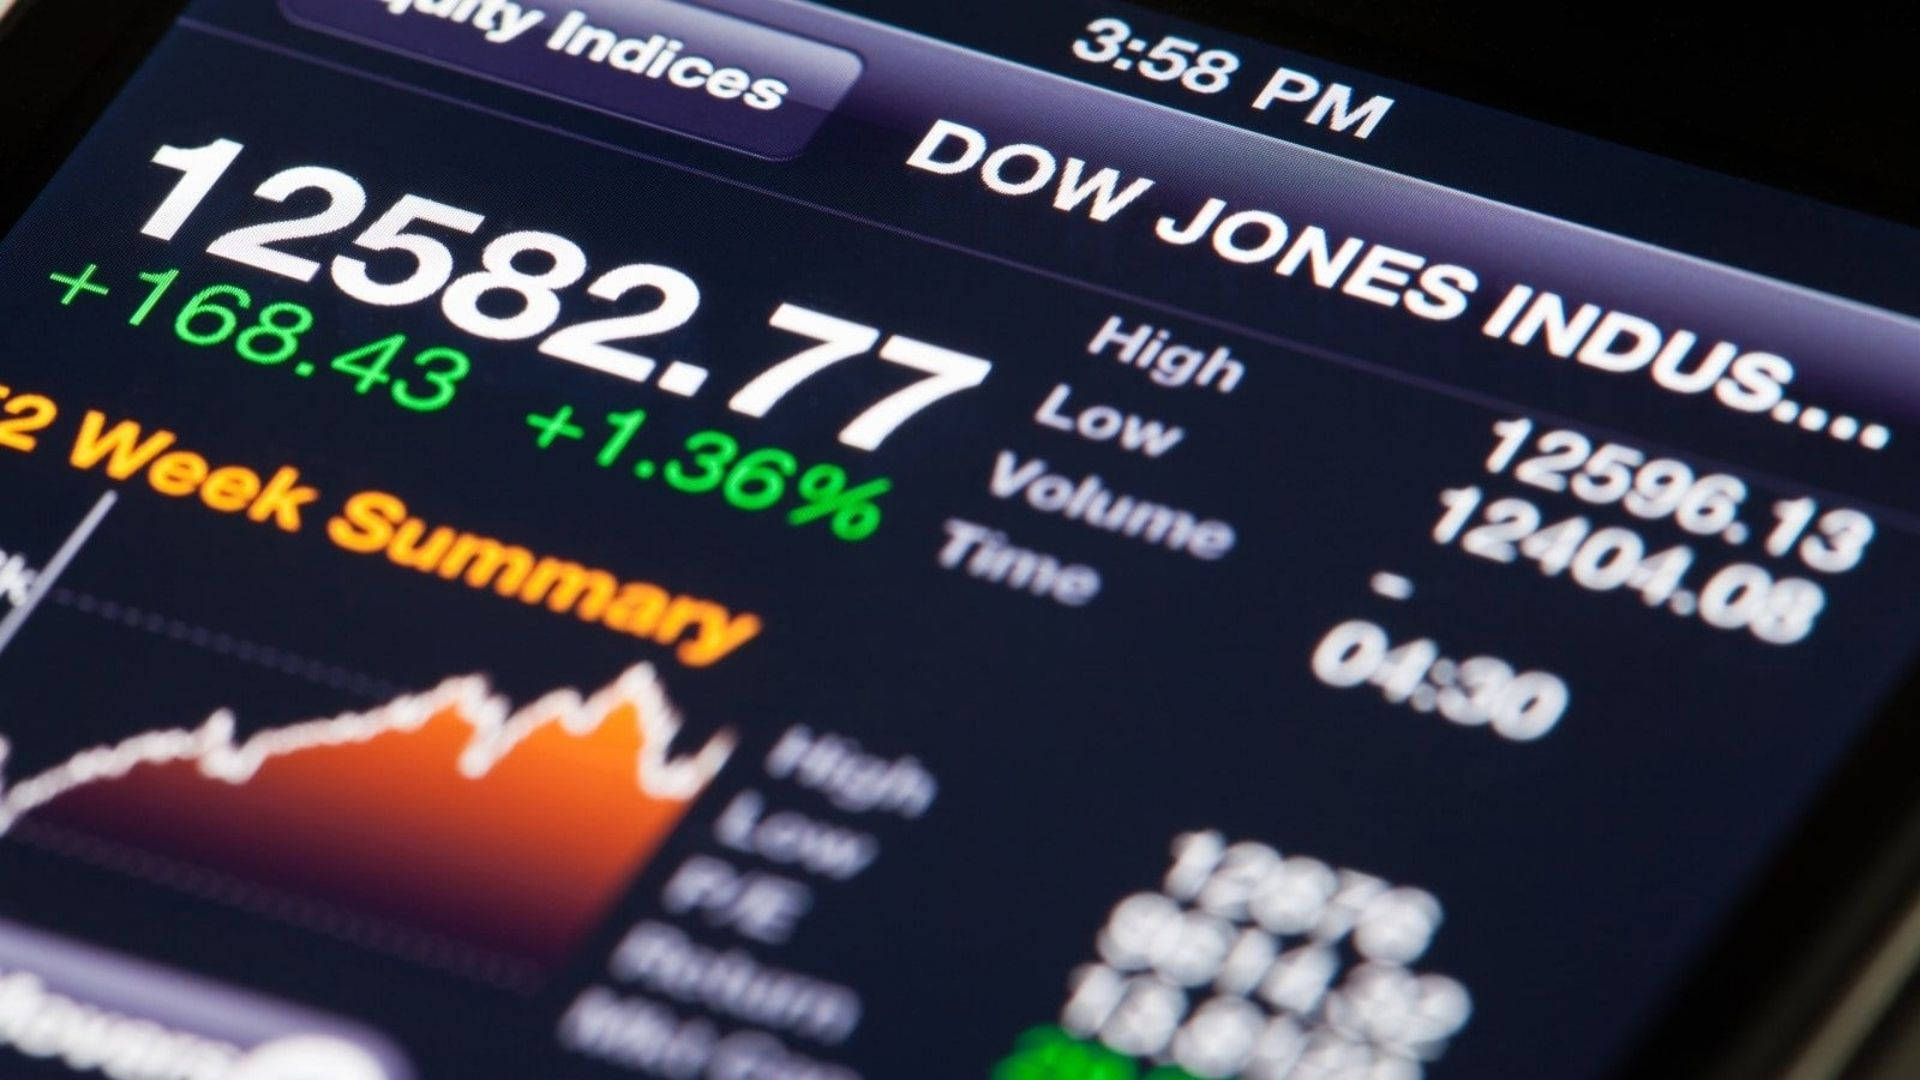 Dow Jones Week Summary